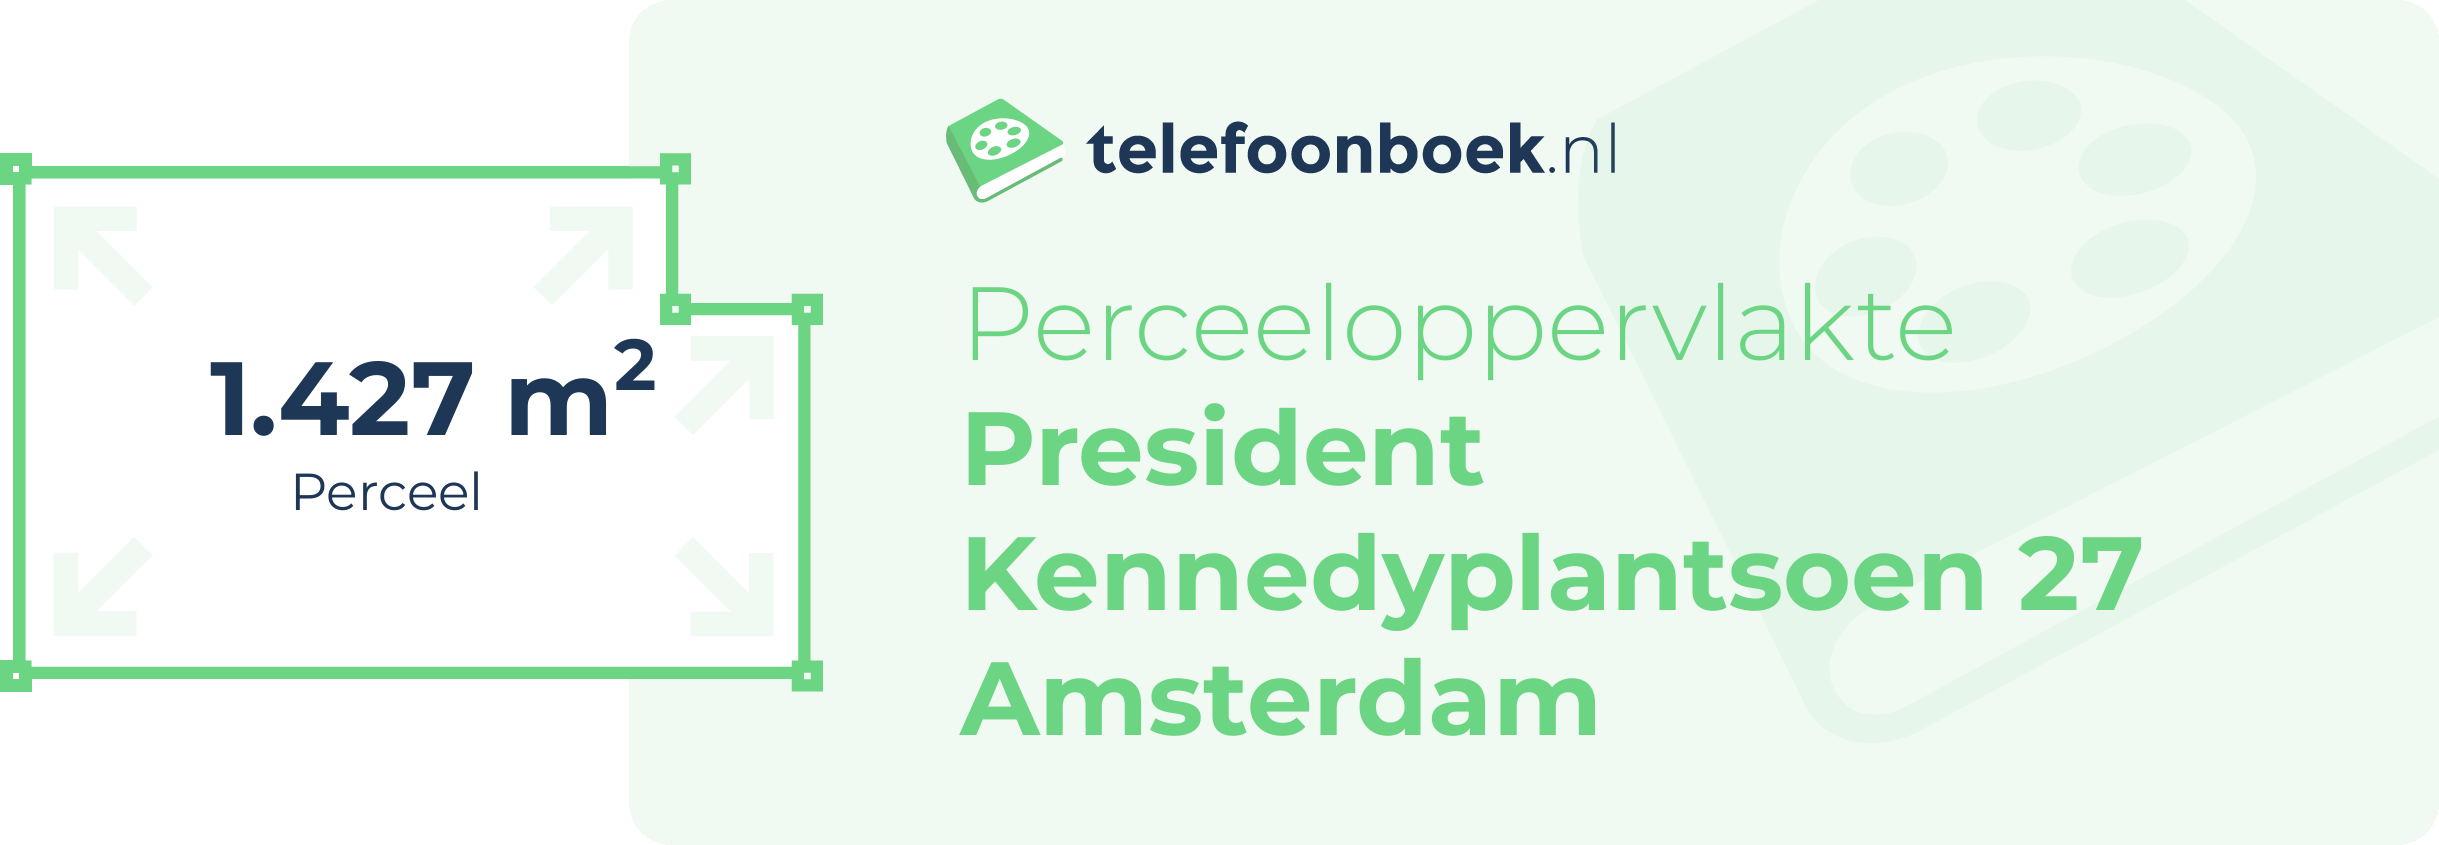 Perceeloppervlakte President Kennedyplantsoen 27 Amsterdam